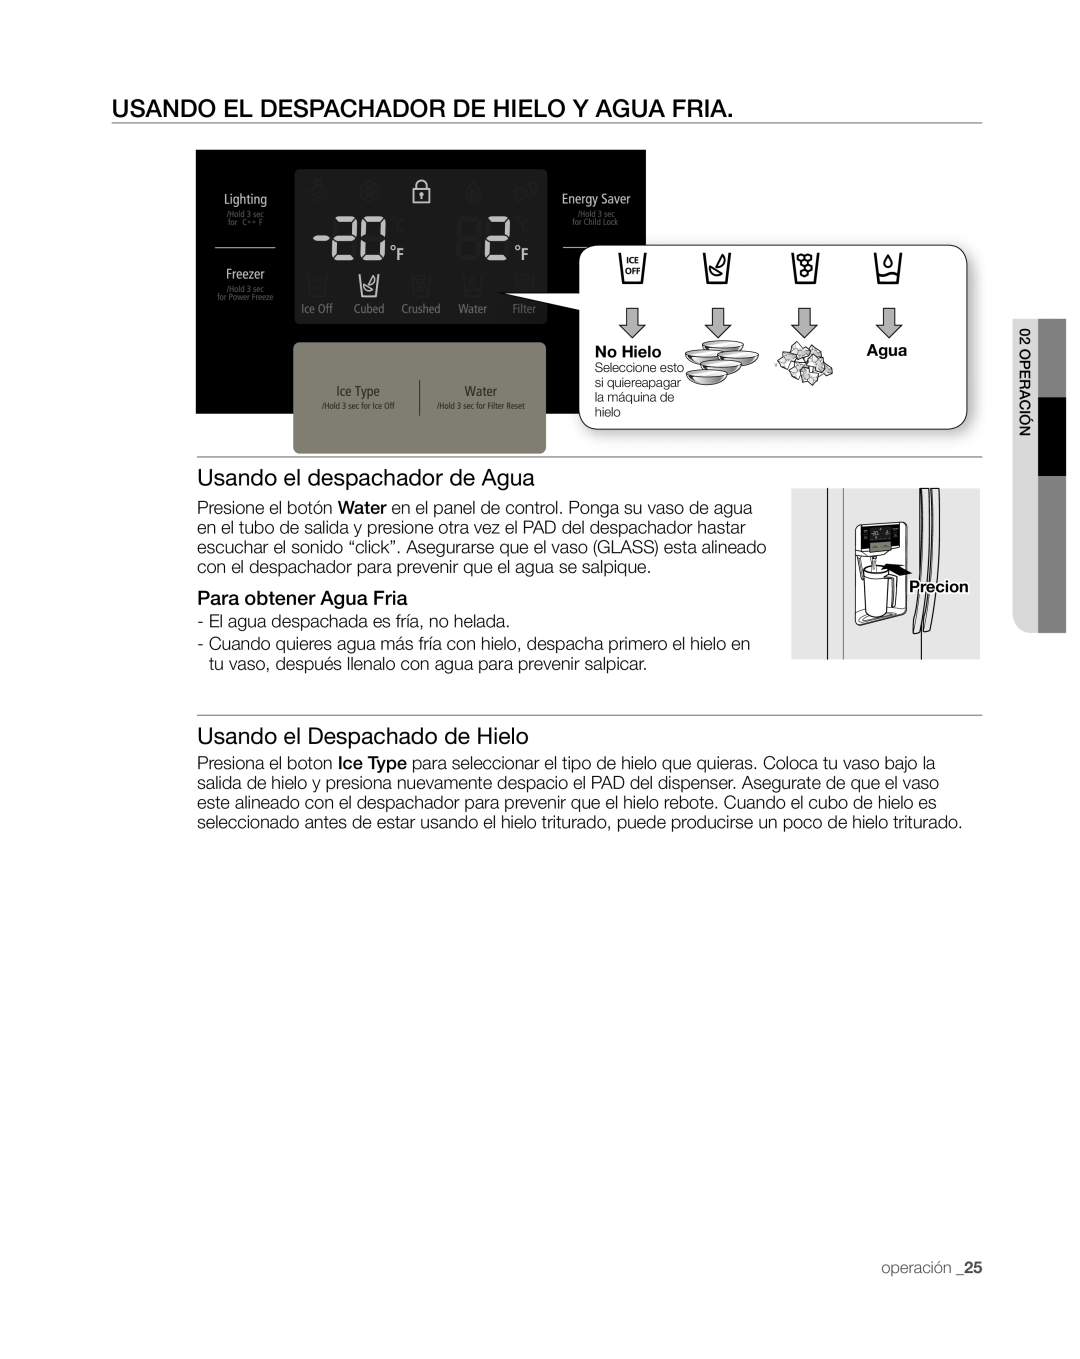 Samsung RS267TDWP Usando El Despachador De Hielo Y Agua Fria, Usando el despachador de Agua, Usando el Despachado de Hielo 